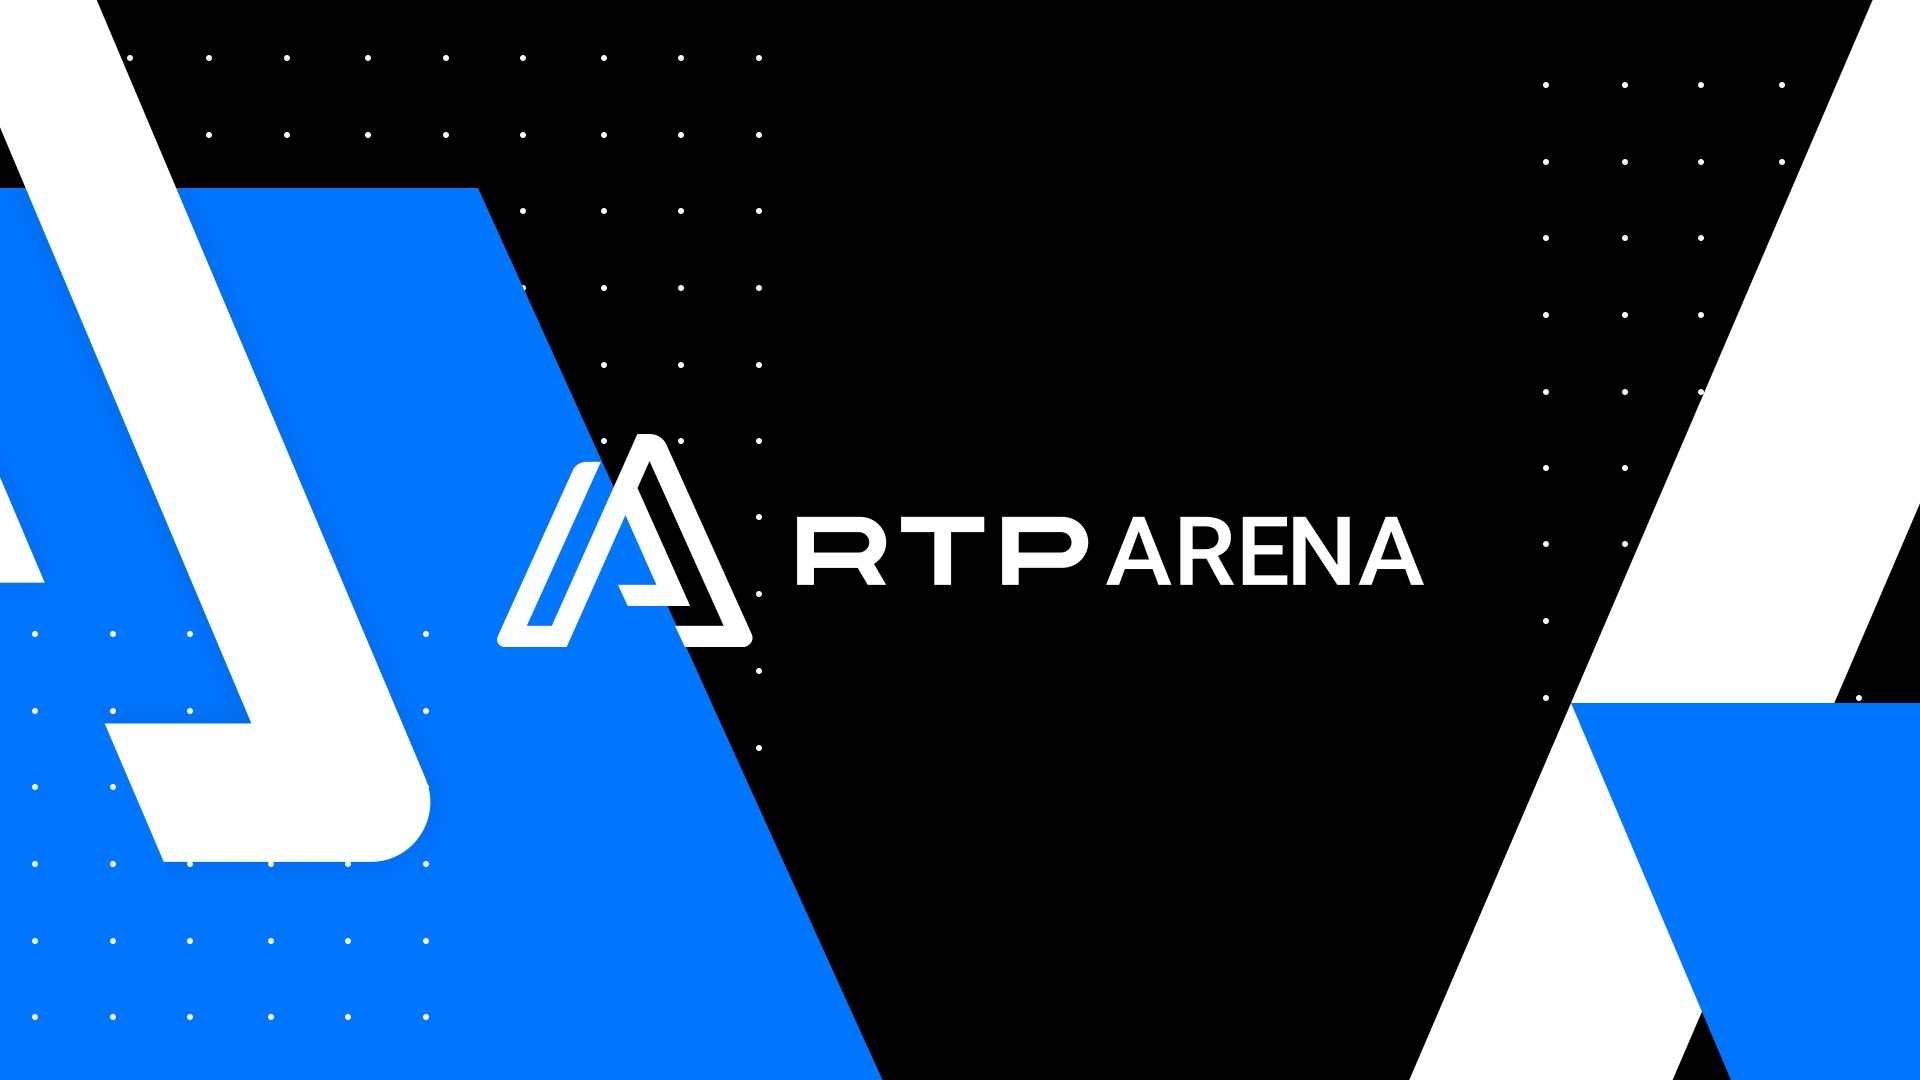 GTA VI - RTP Arena